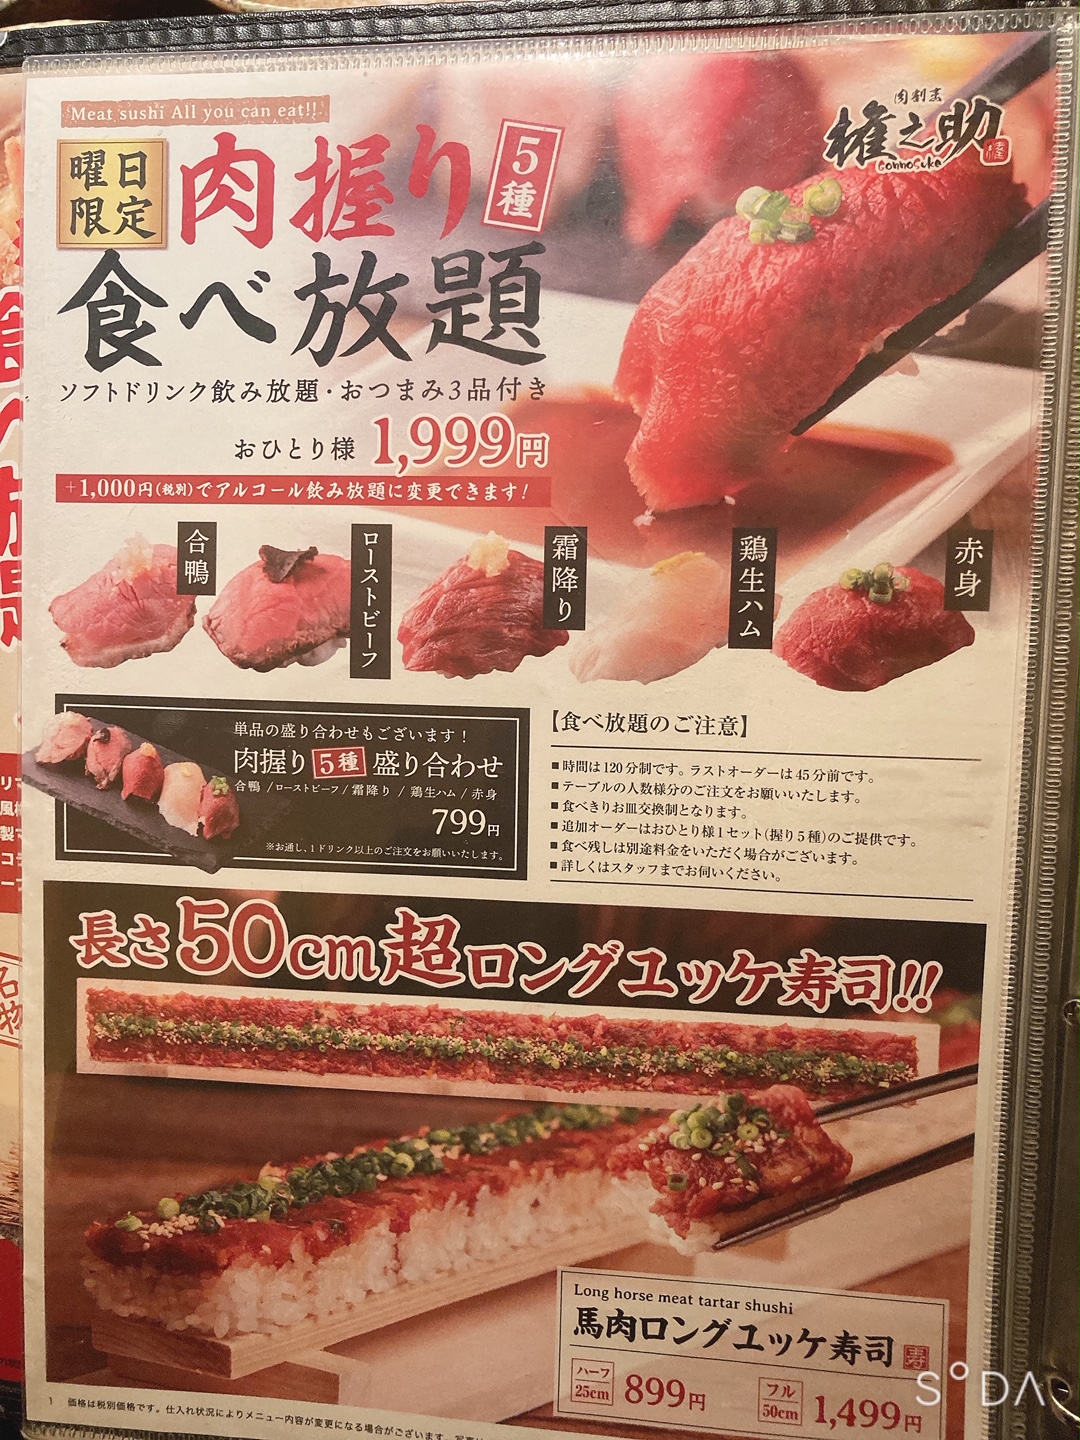 横浜 肉の権之助 食べ放題 00円で5種類の肉寿司が食べ放題 ソフトドリンク飲み放題付き 食と読書で生きる男